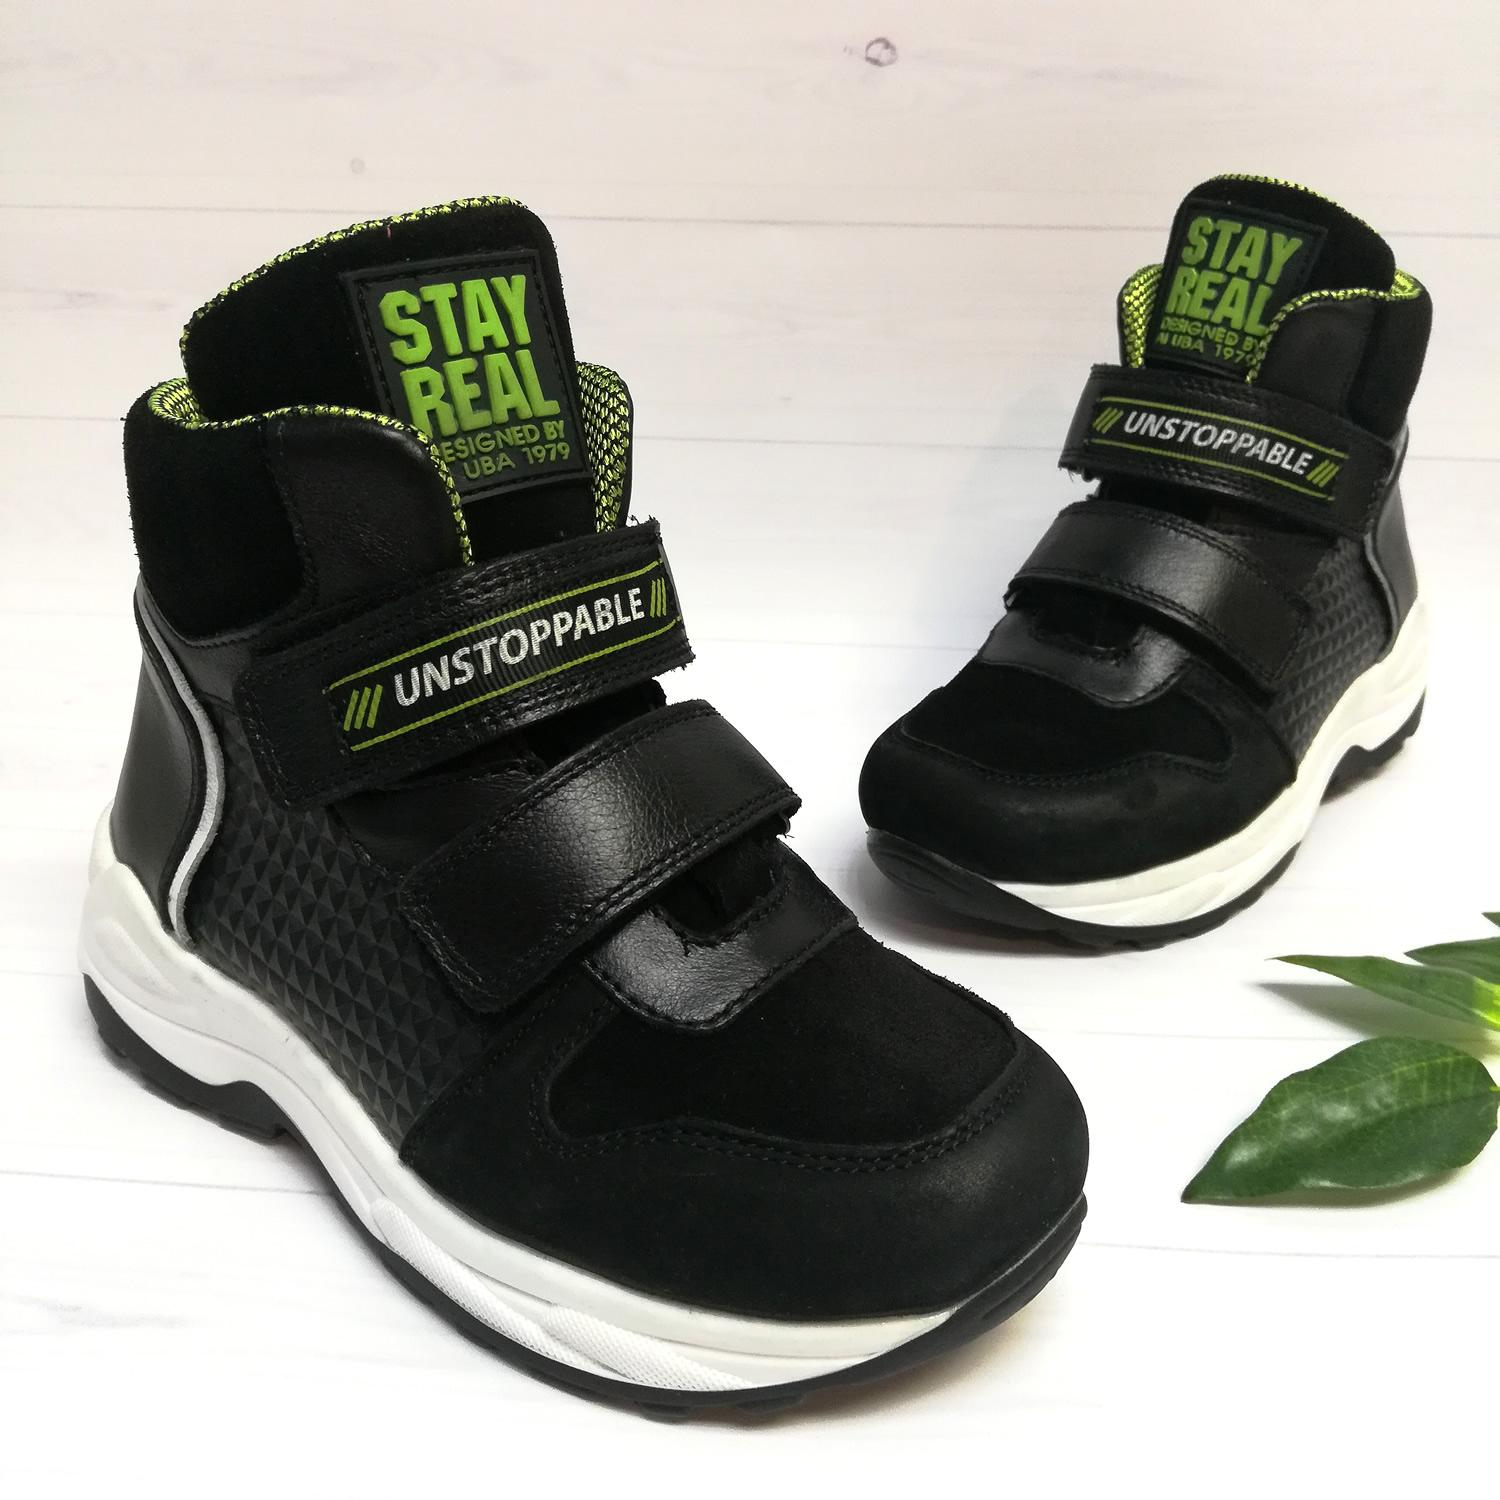 Дитячі демісезонні черевики для хлопчика, чорні (08300/821 / 1ут), Bistfor